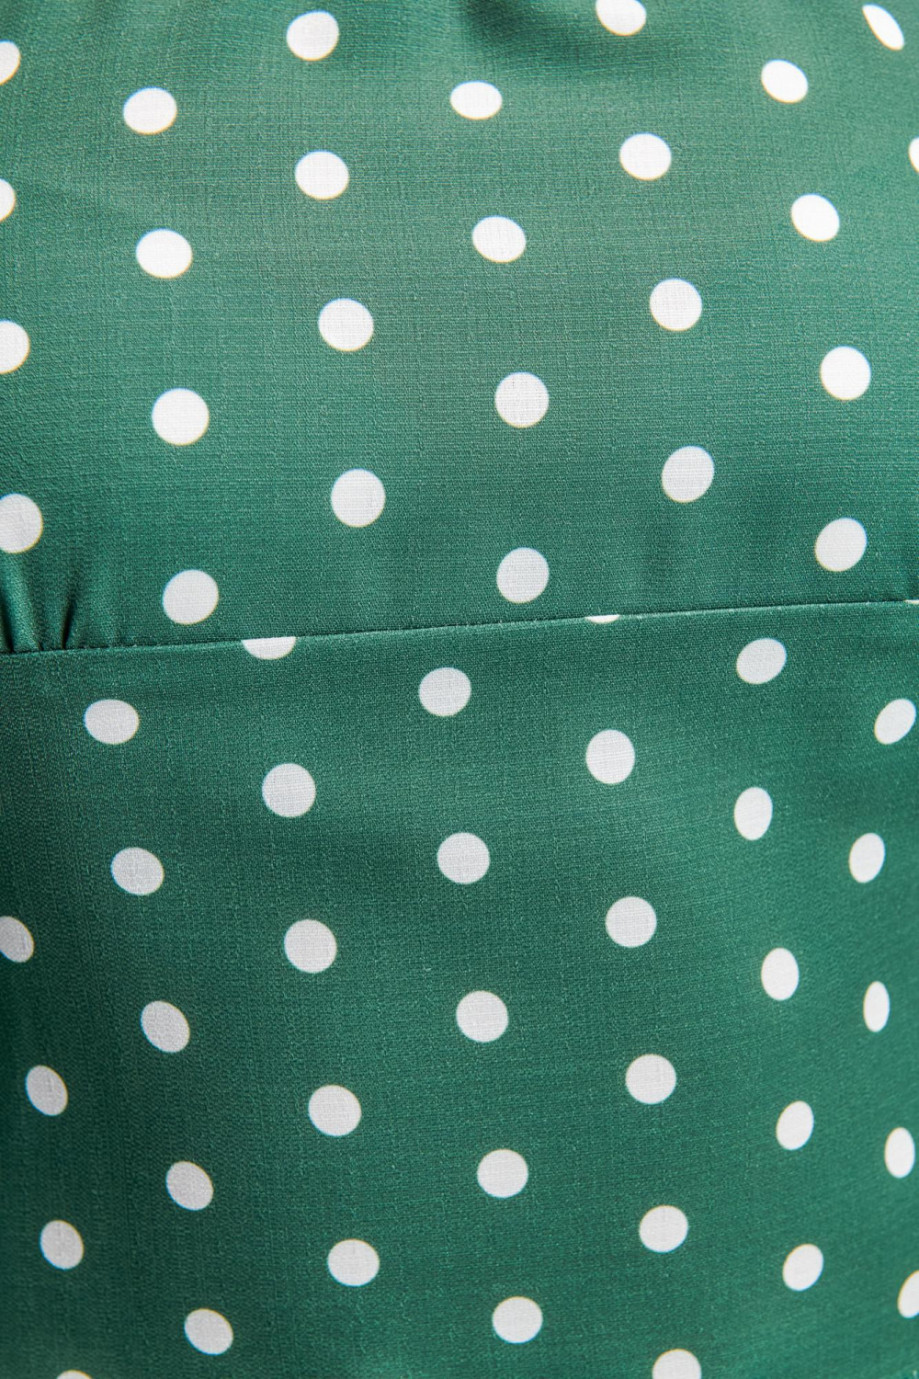 Blusa manga larga verde con estampado de puntos blancos